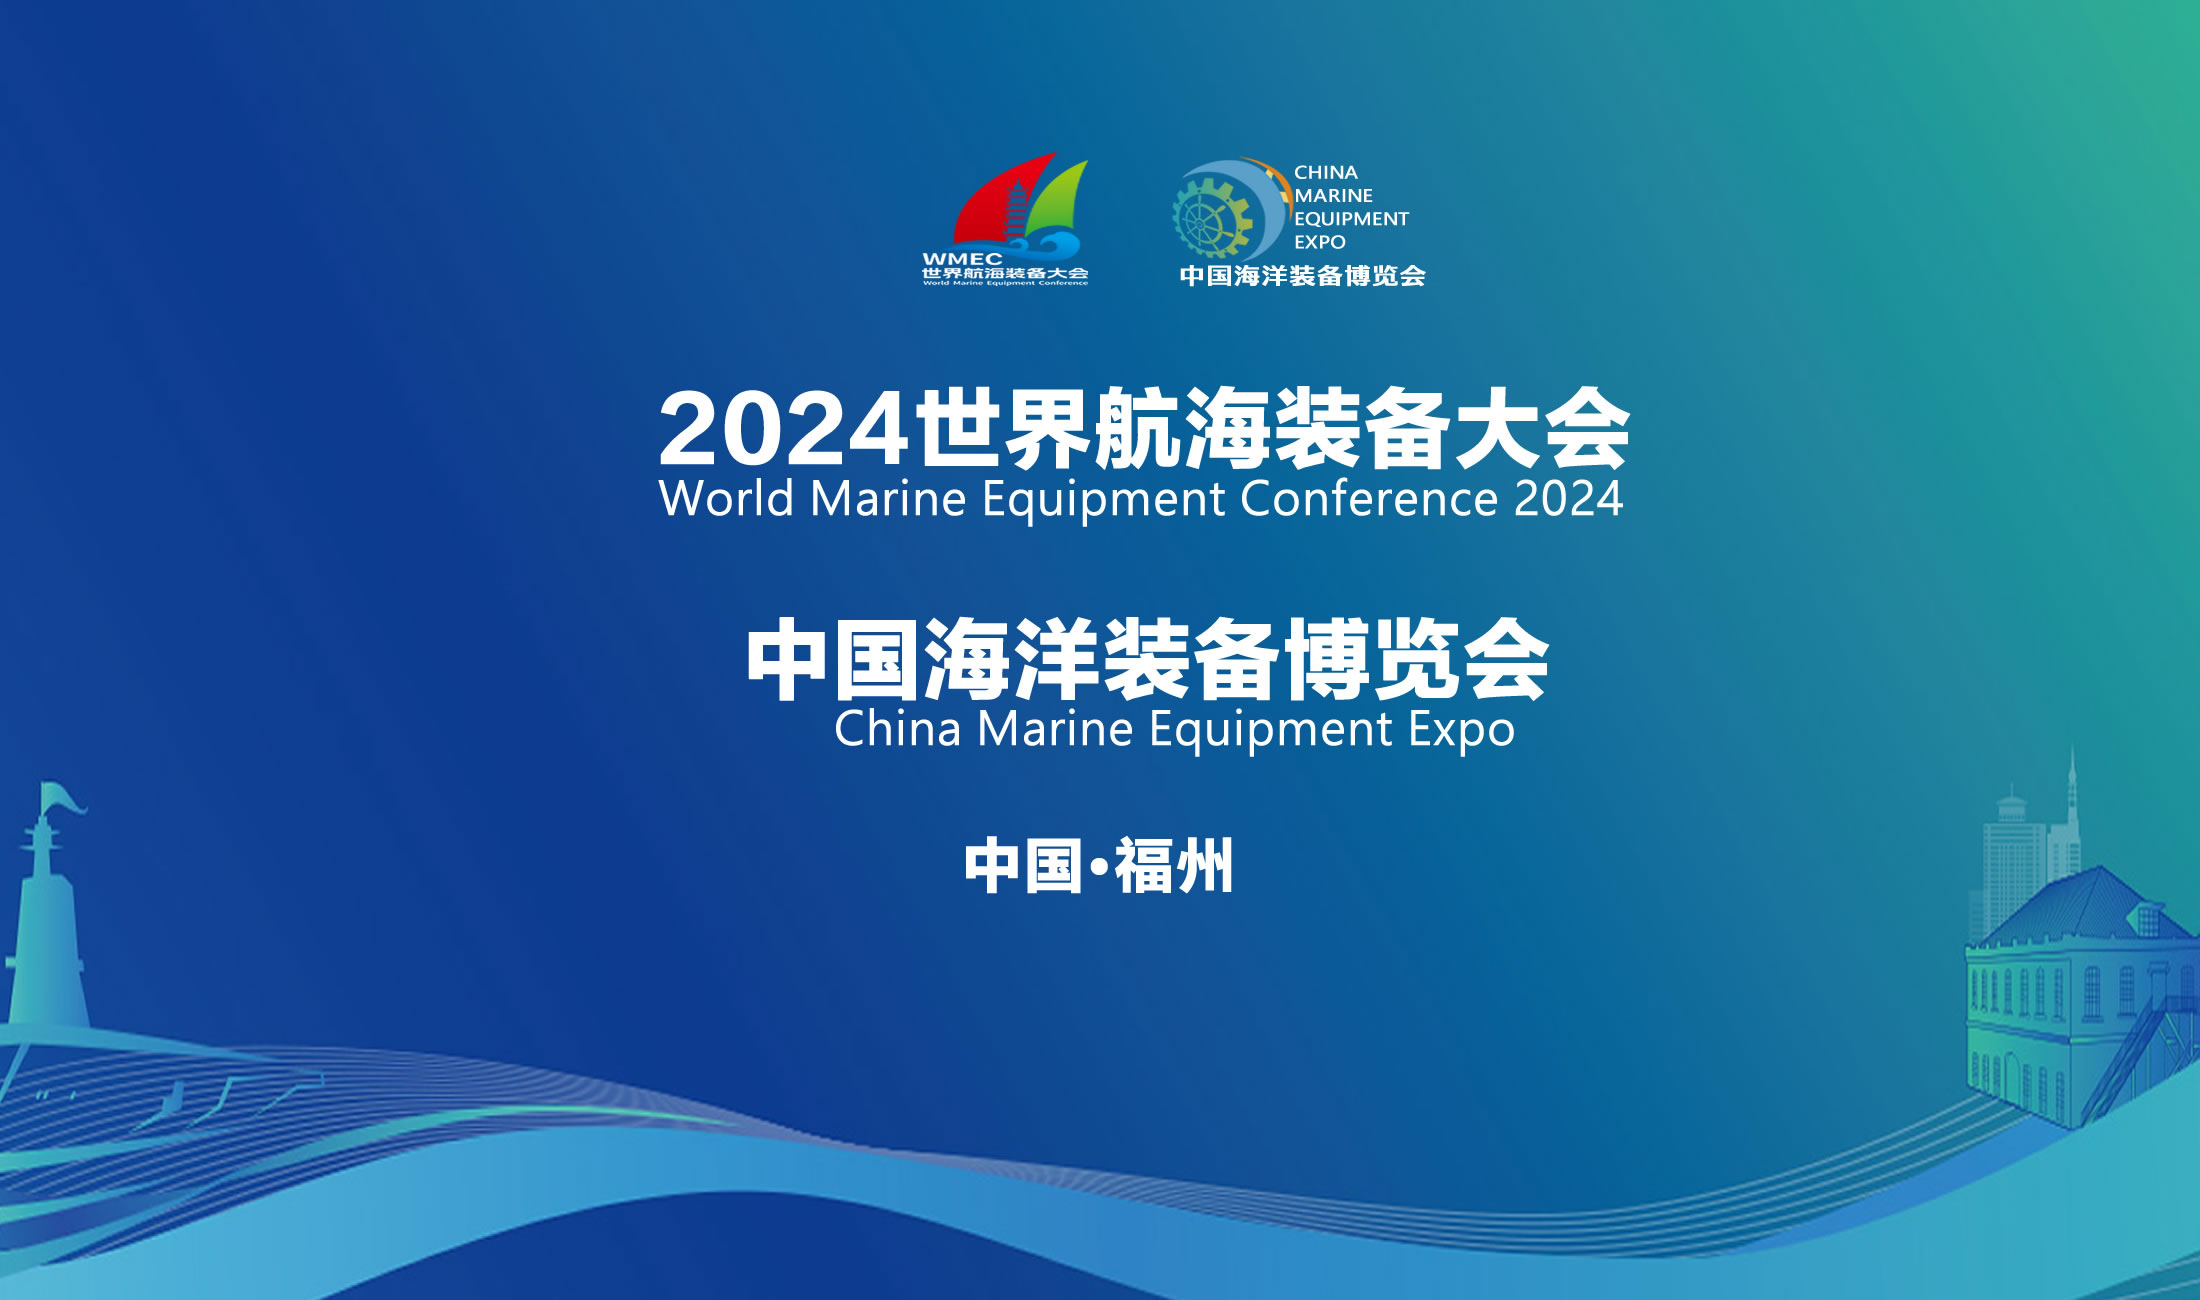 2024世界航海装备大会